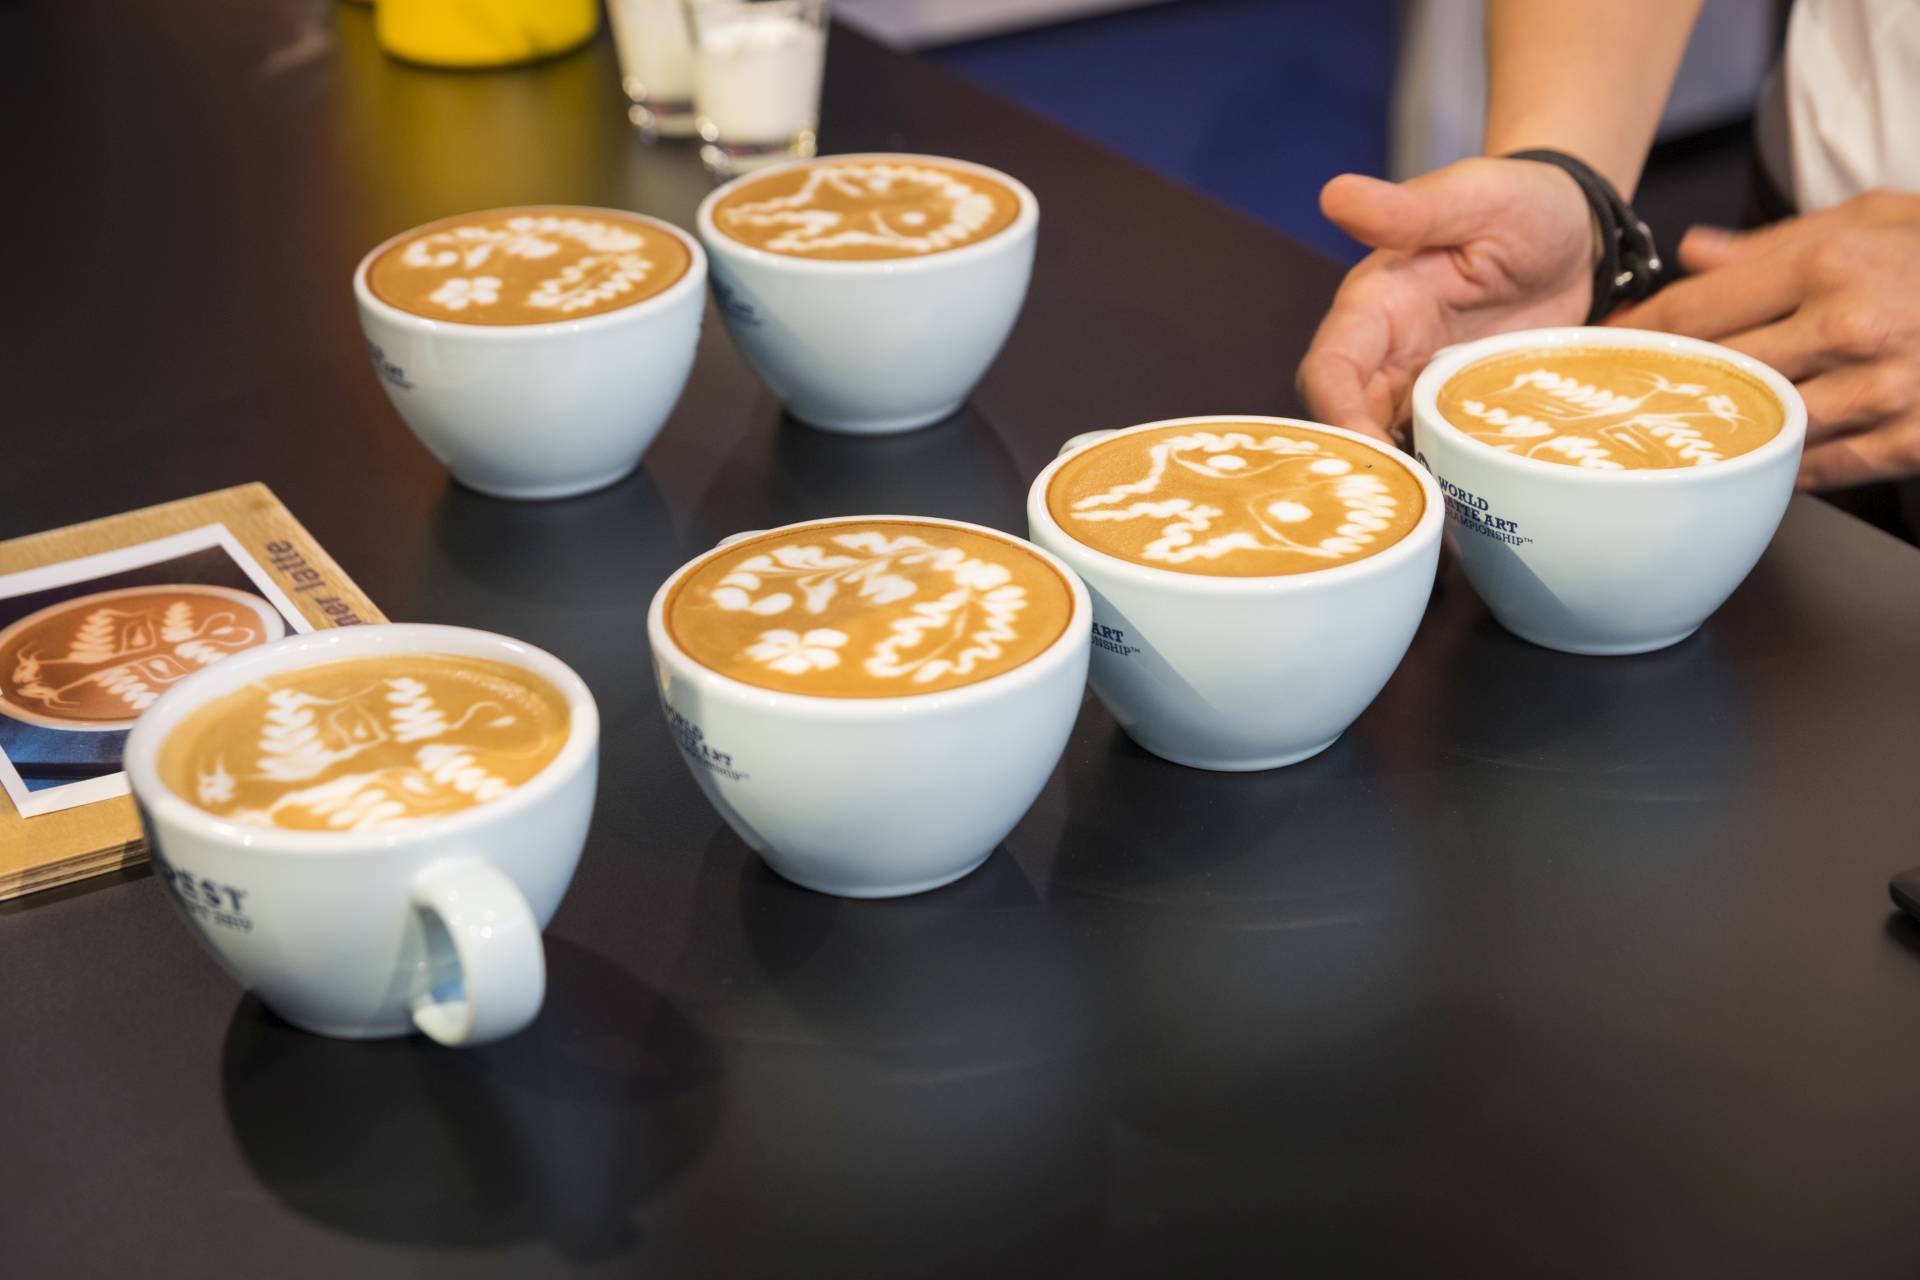 โลกแห่งกาแฟลาเต้อาร์ต 2017 ถ้วยกาแฟที่สมบรูณ์แบบ